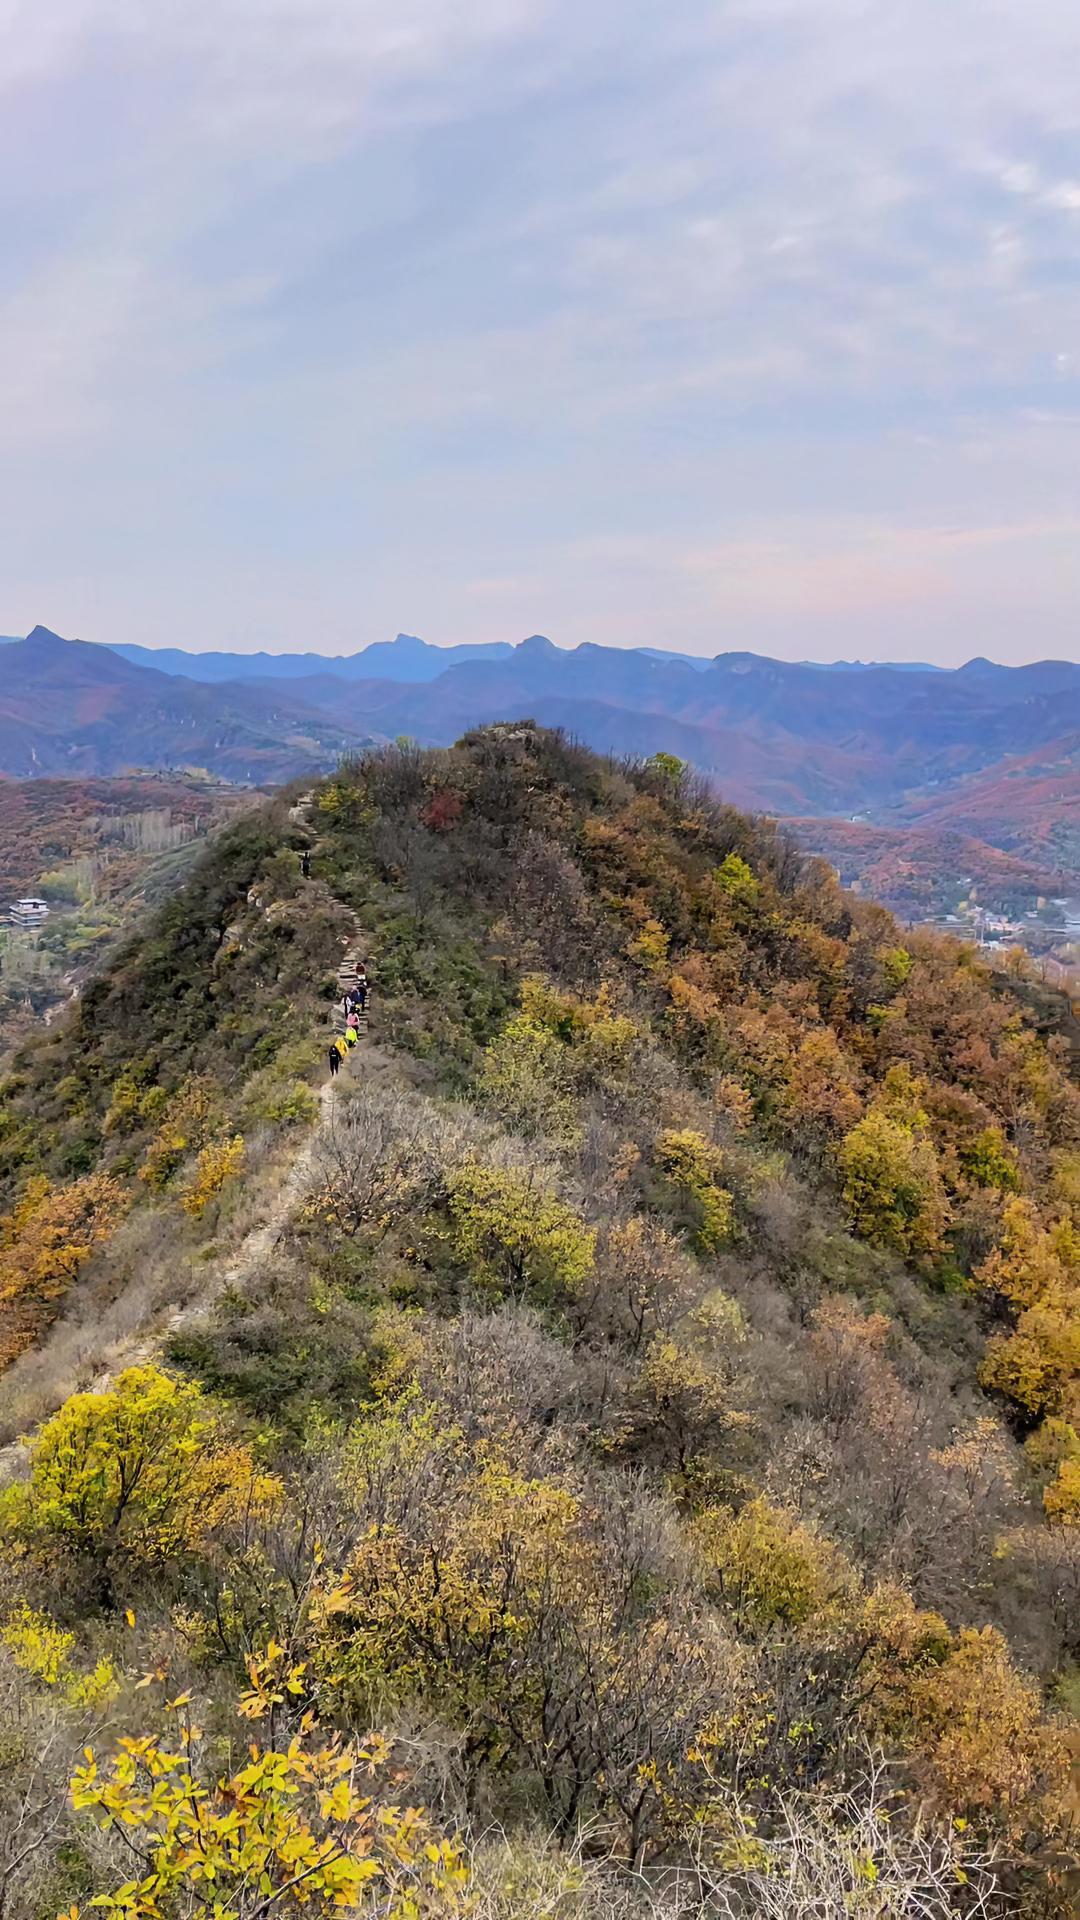 郑州自驾一个小时车程 位于新密神仙洞的伏羲山 这里的秋天层林尽染